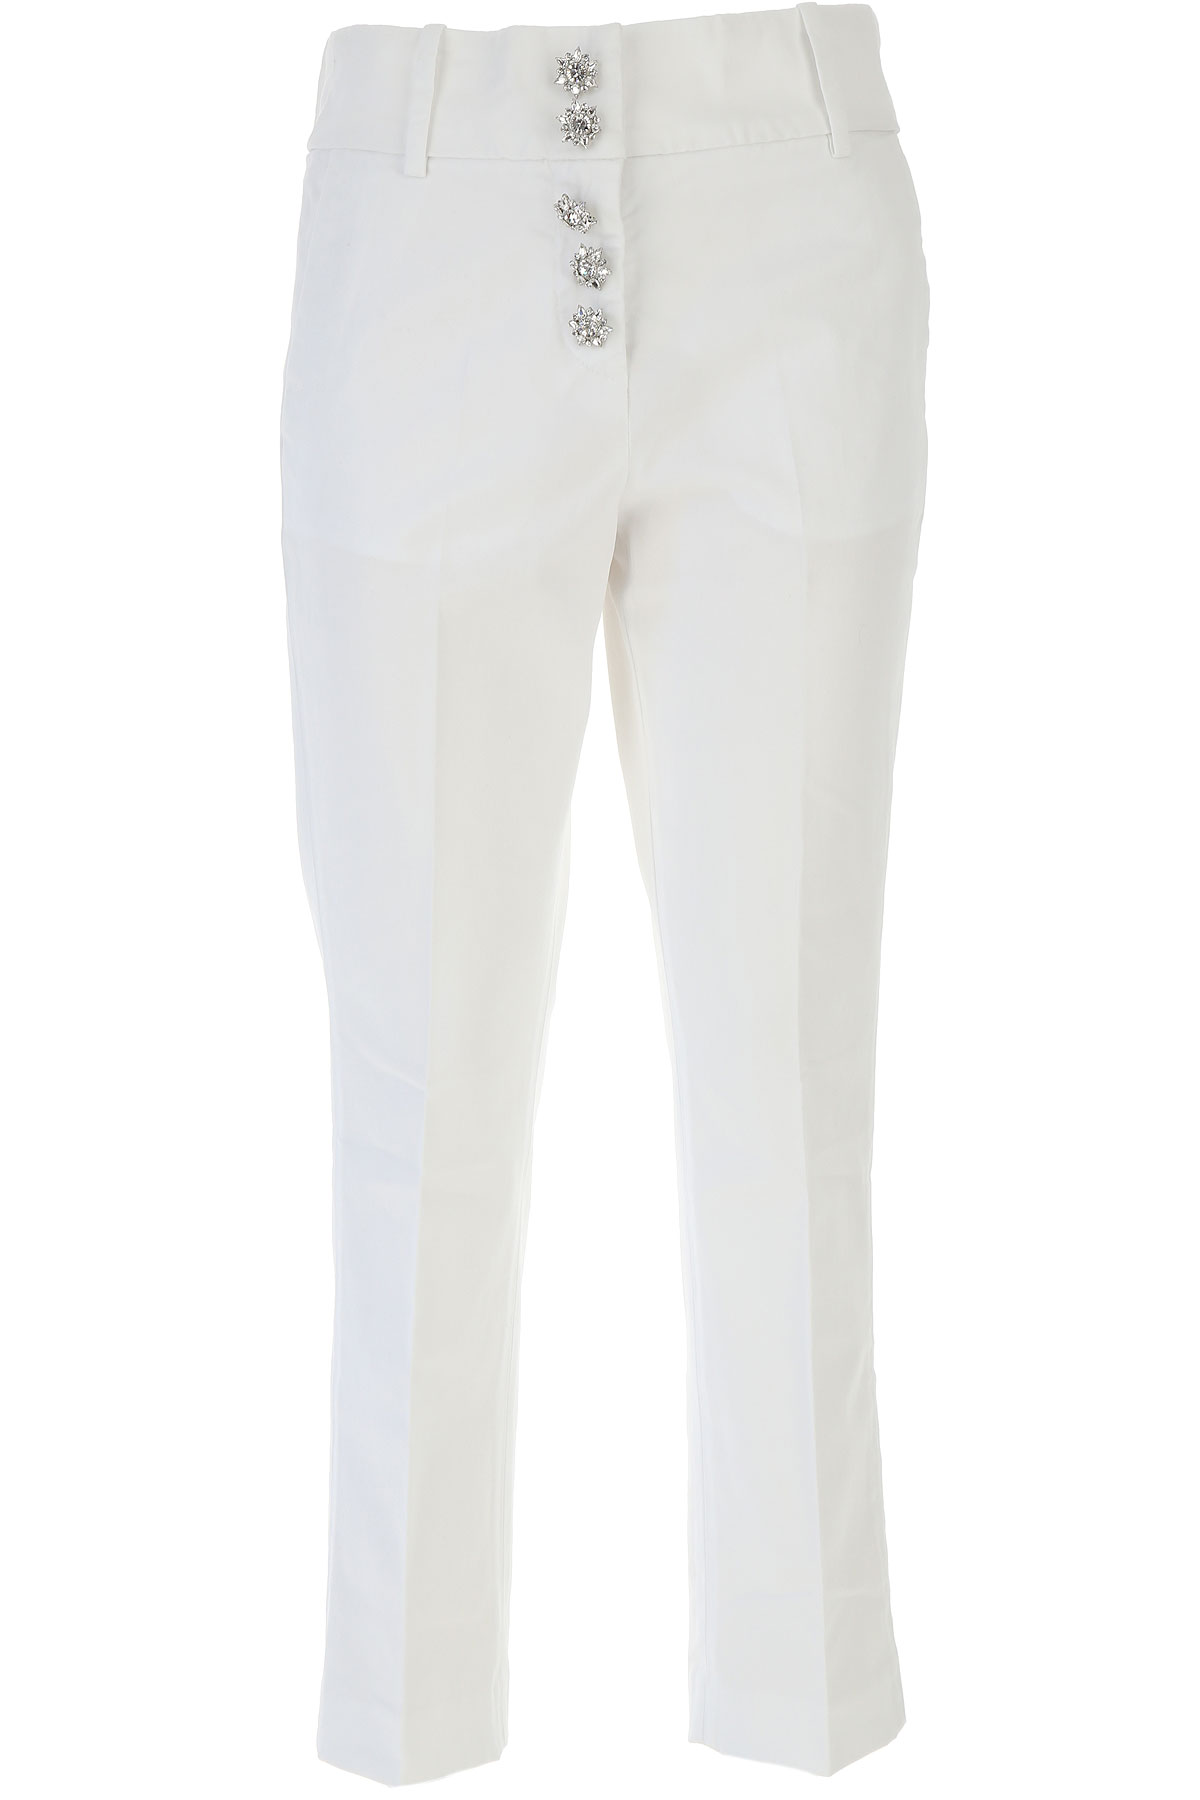 Dondup Pantalon Femme, Blanc, Coton, 2017, 39 40 41 42 42